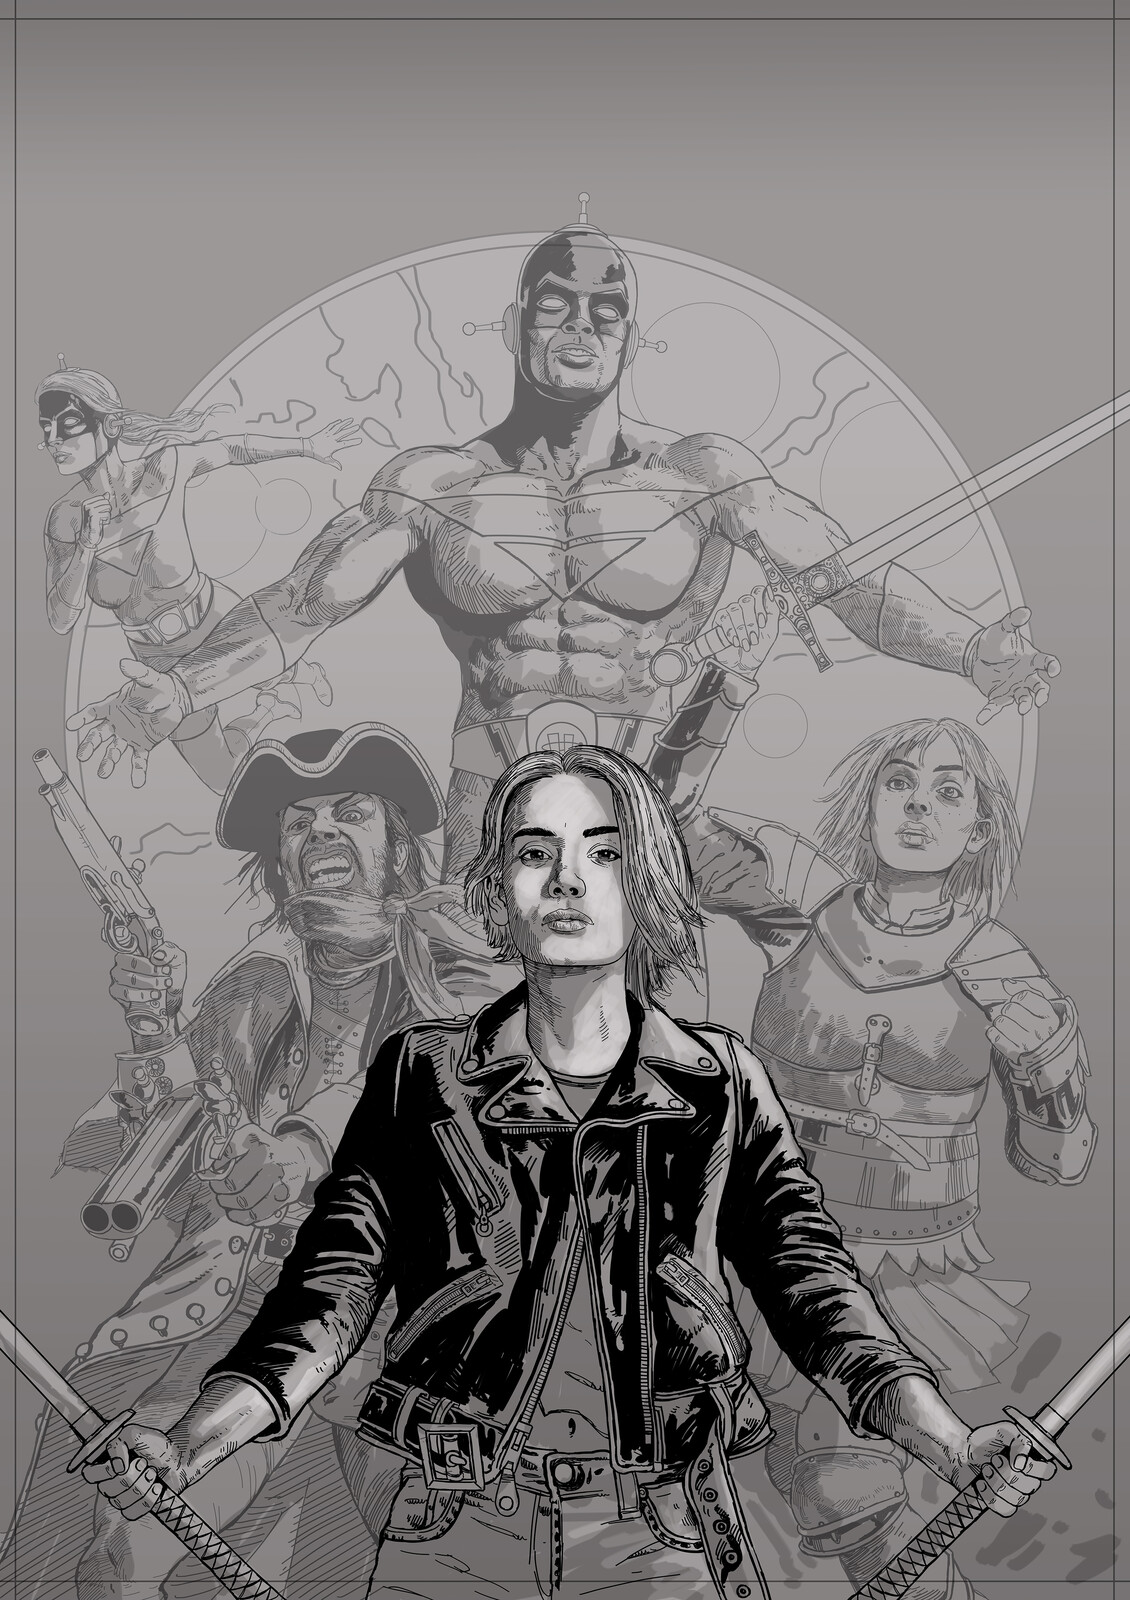 ComicScene 2021 Annual Cover sketch 